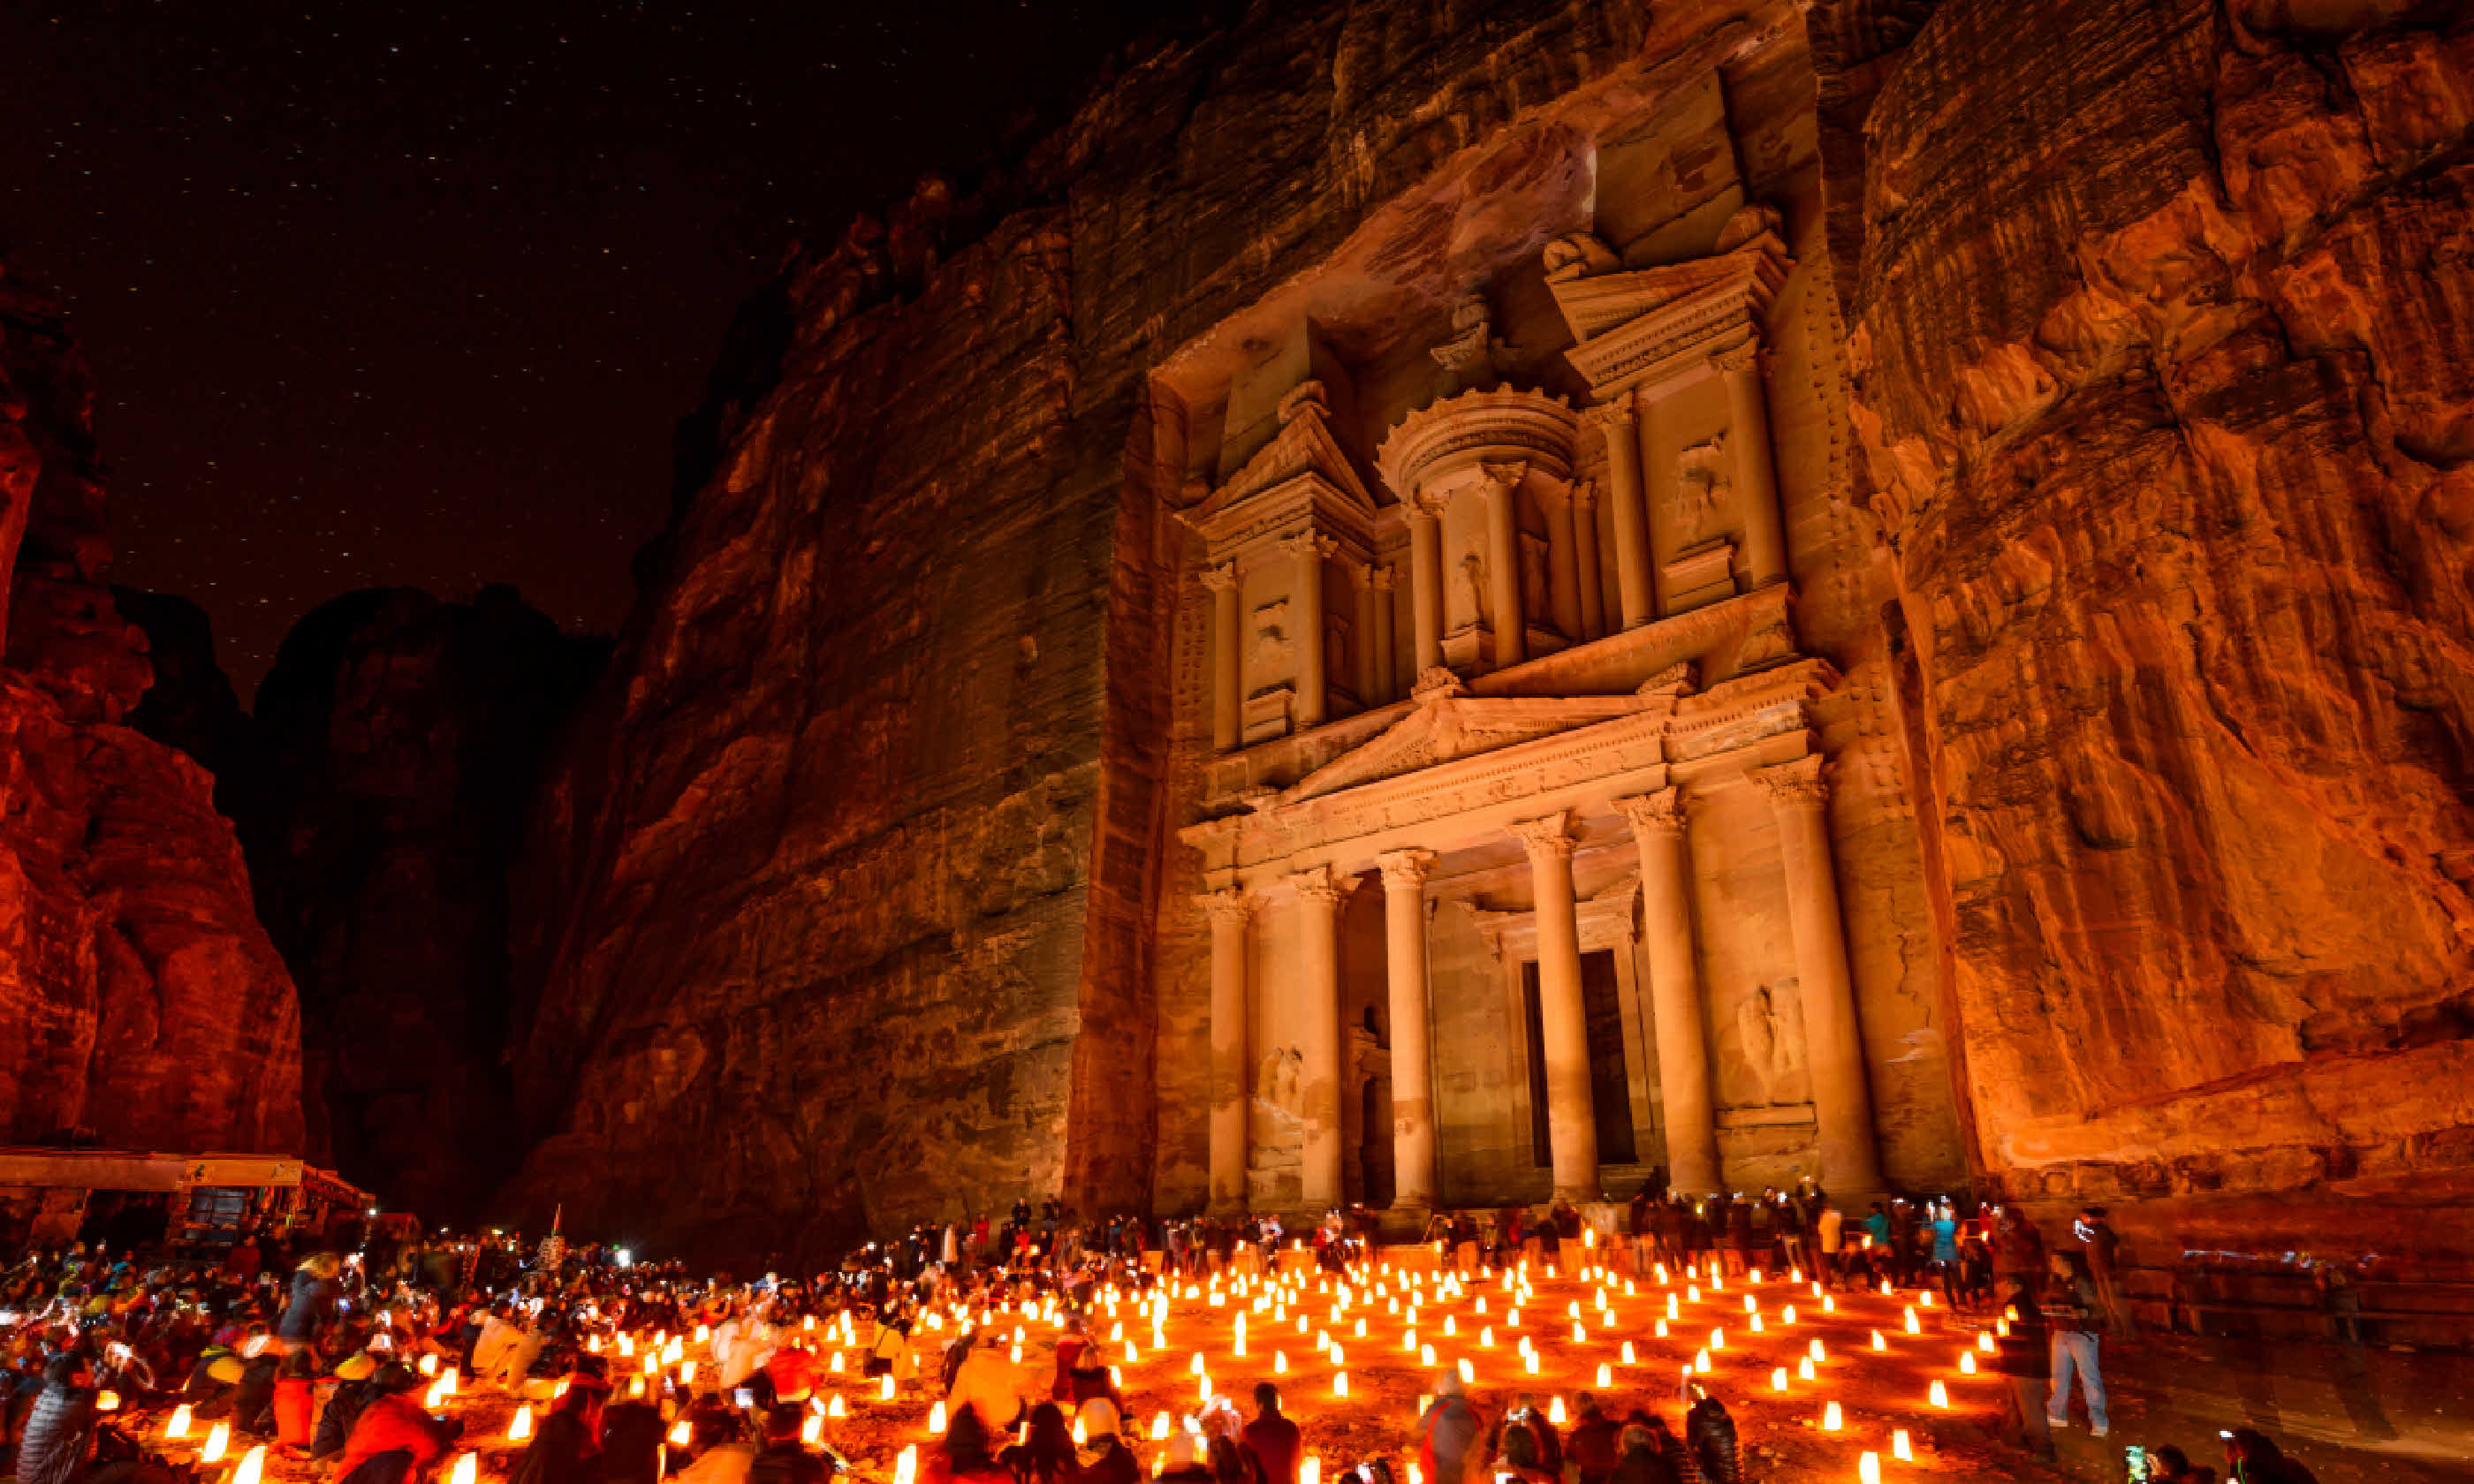 Al Khazneh in Petra, Jordan (Shutterstock)